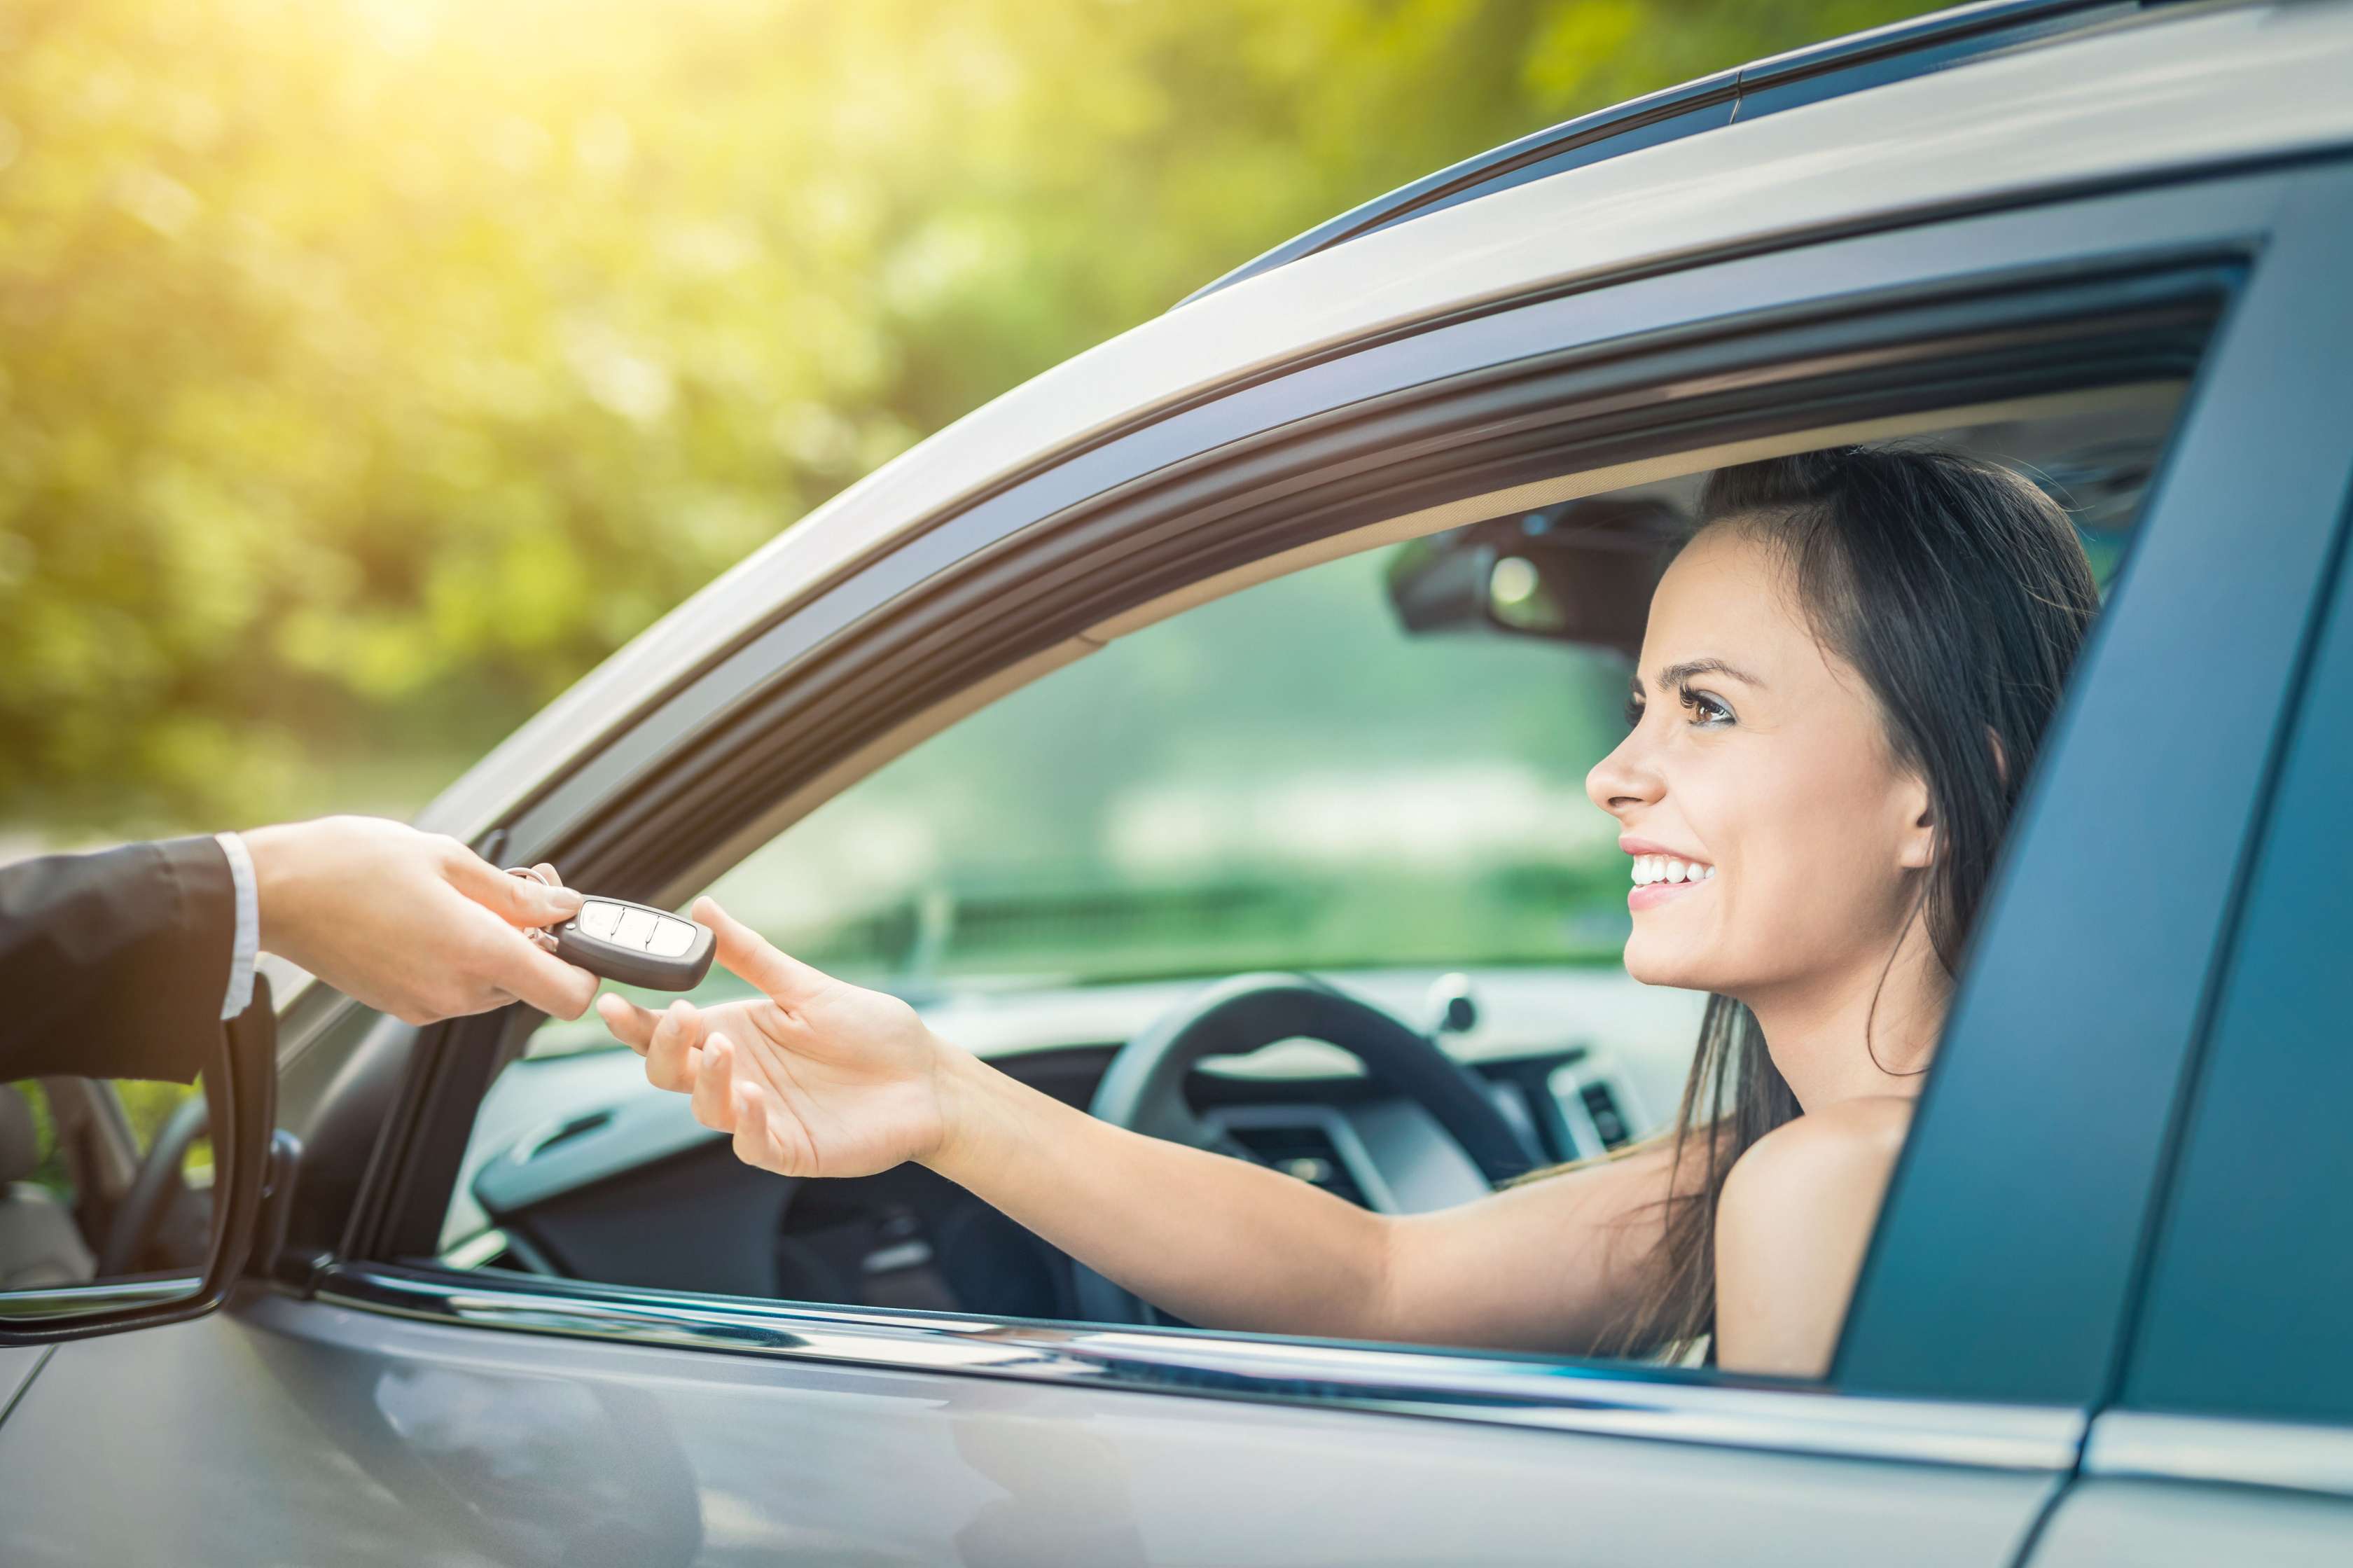 Bei Kfz-Halterwechsel übergibt jemand einer jungen Frau, die im Auto sitzt, durch das geöffnete Fahrerfenster den Autoschlüssel